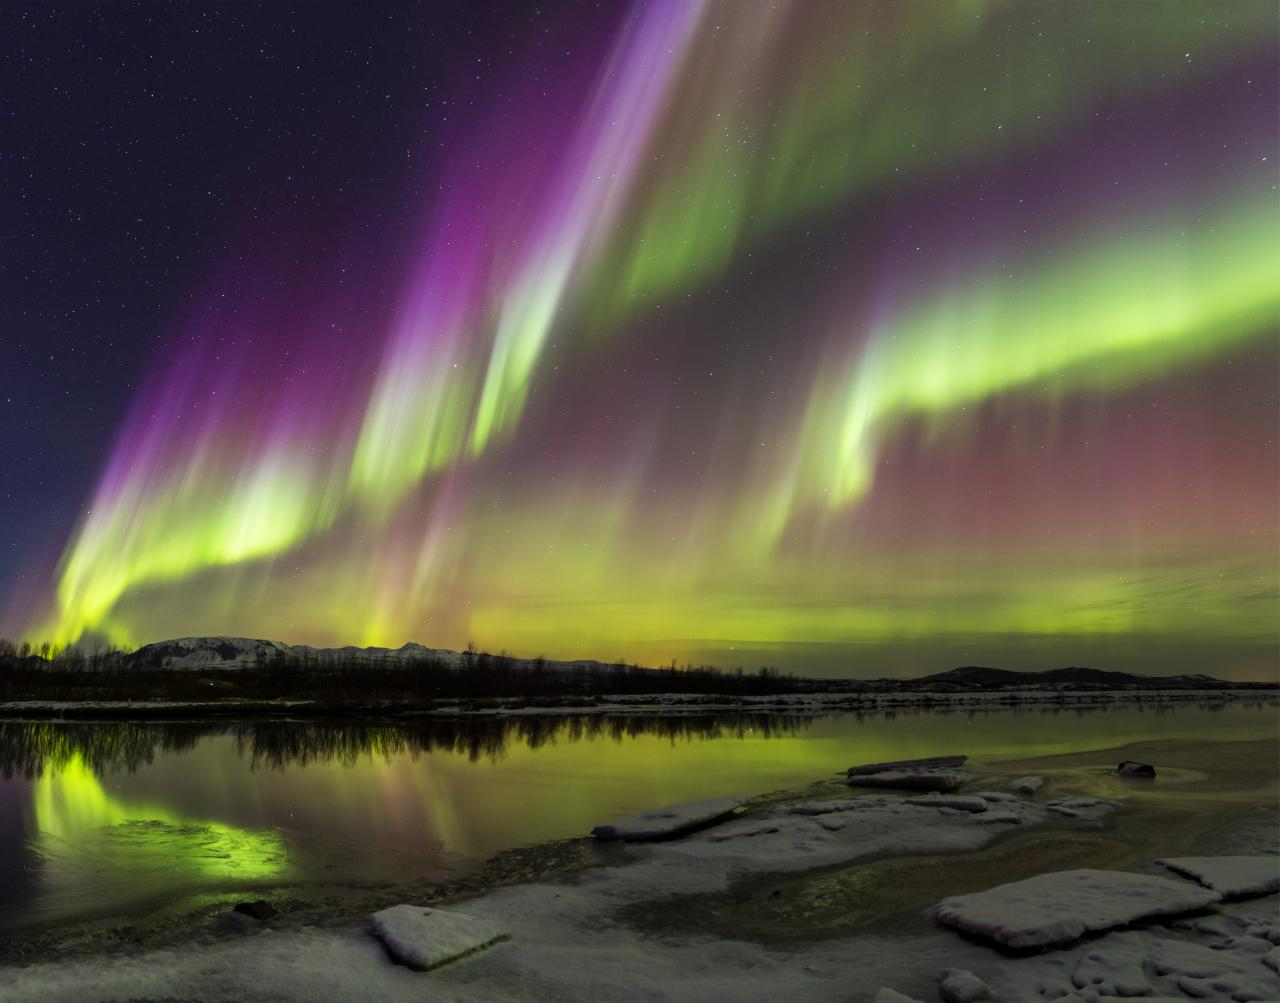 El fenómeno ocurre alrededor del Círculo Polar Ártico y crea un espectro de colores en el cielo.